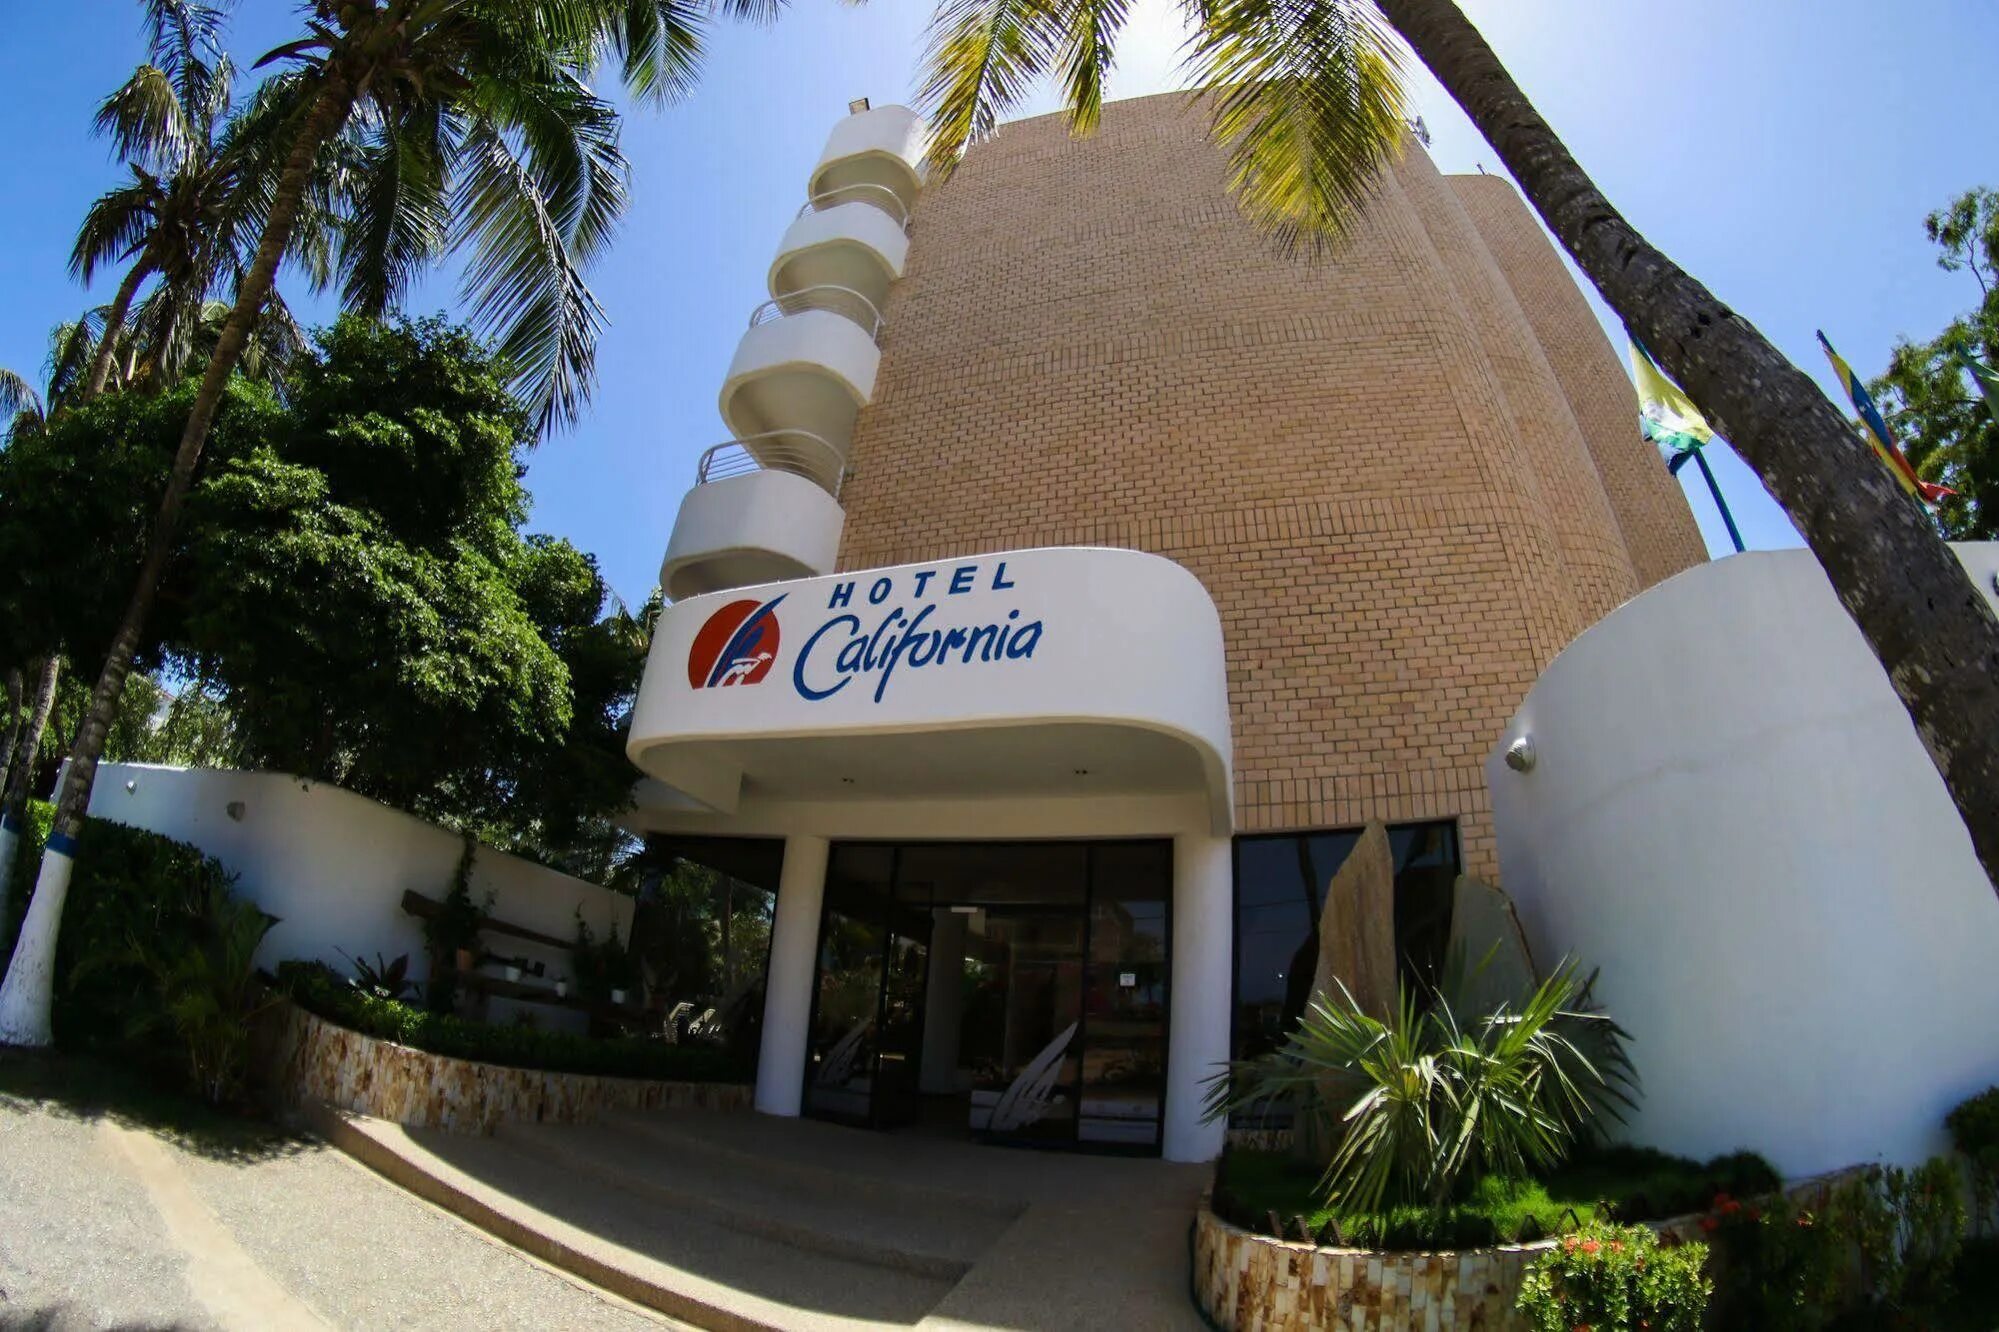 Отель Калифорния. «California» / «Калифорния» отель. Отель Калифорния фото.